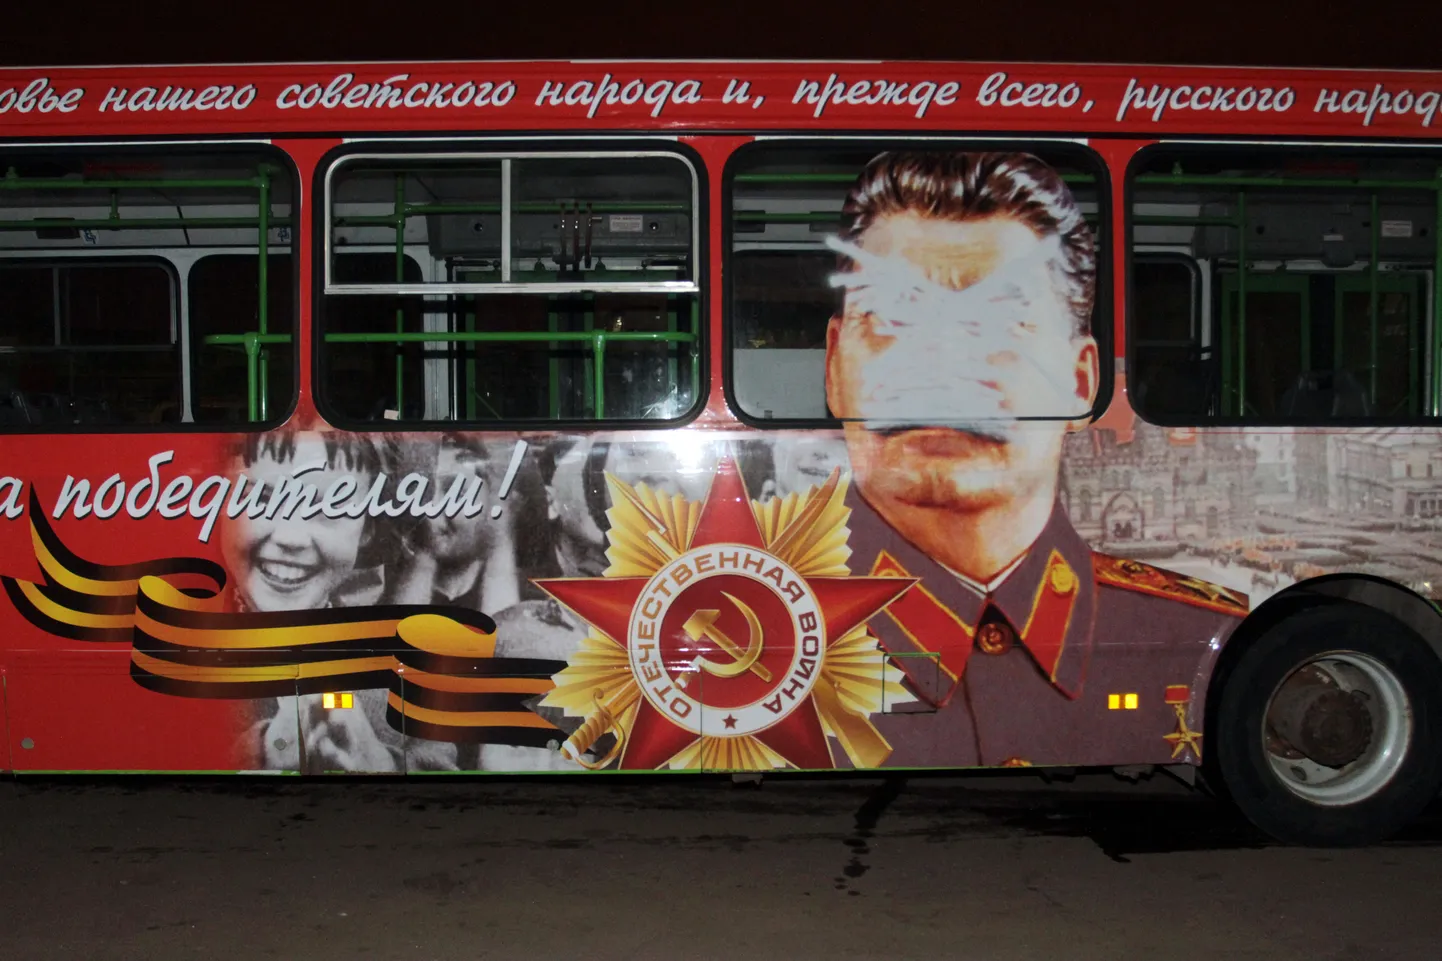 Первые попытки намалевать Сталина на автобусе были неудачны.